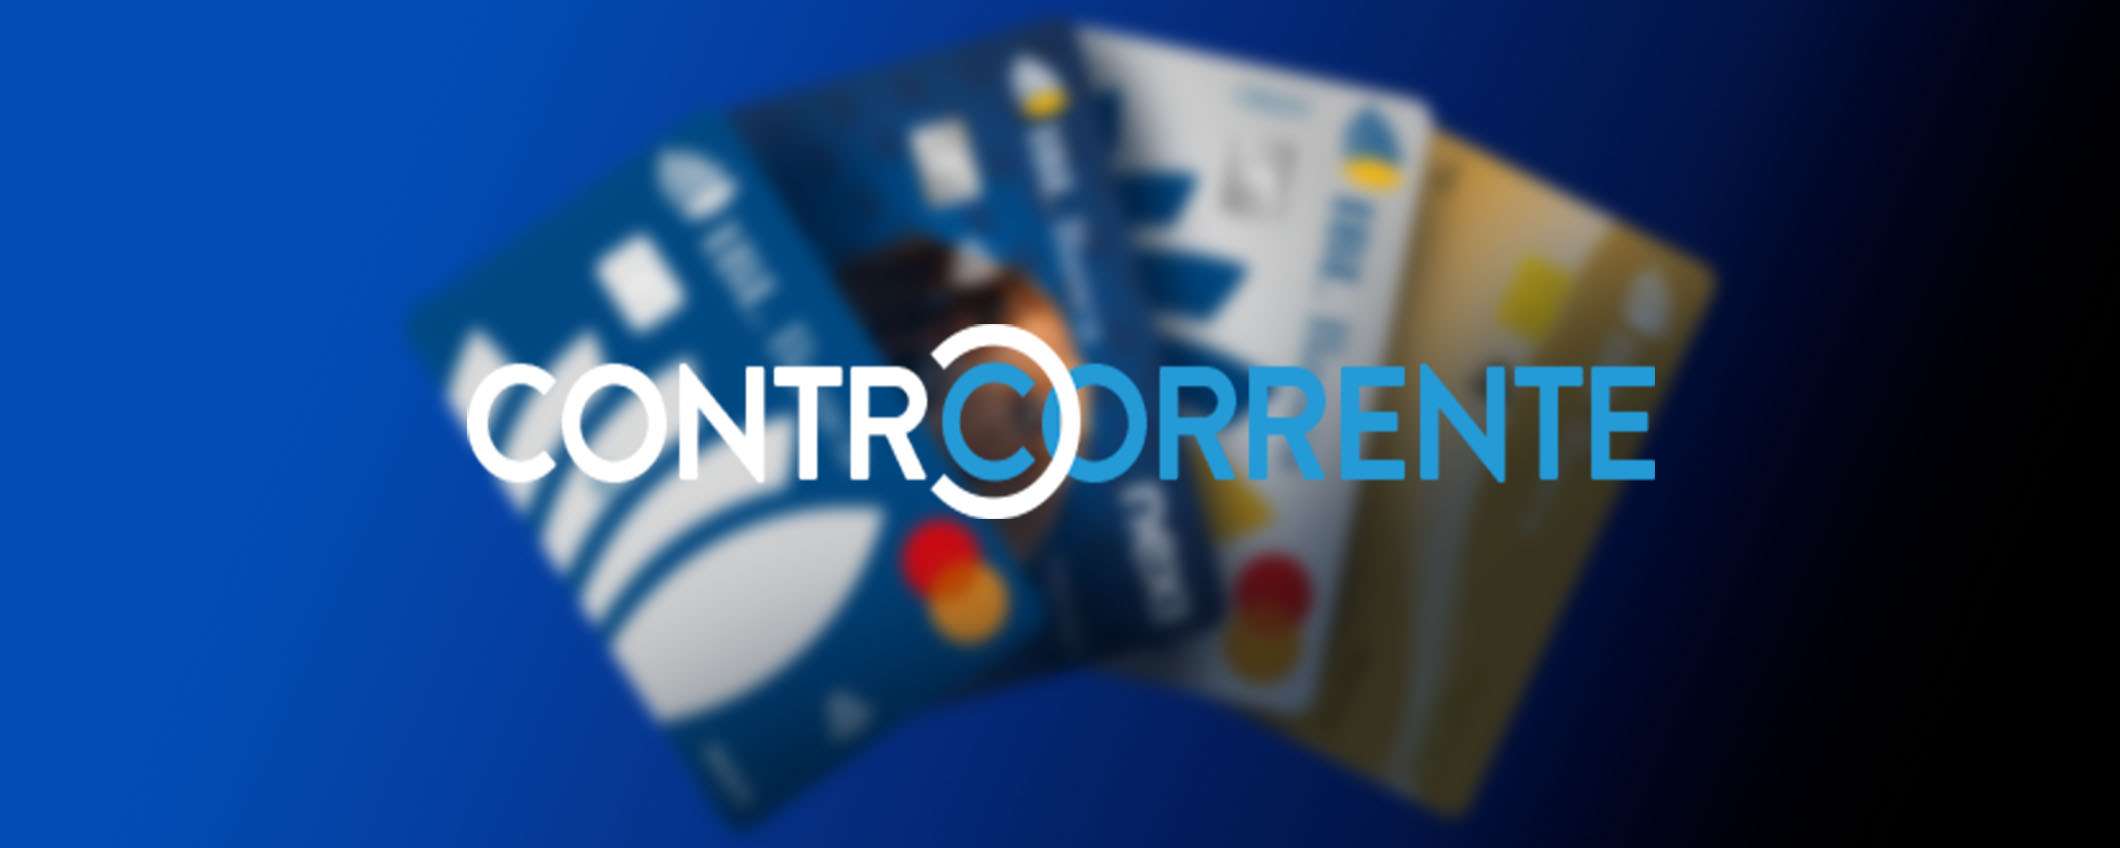 ControCorrente: interesse del 3,5% e canone gratuito